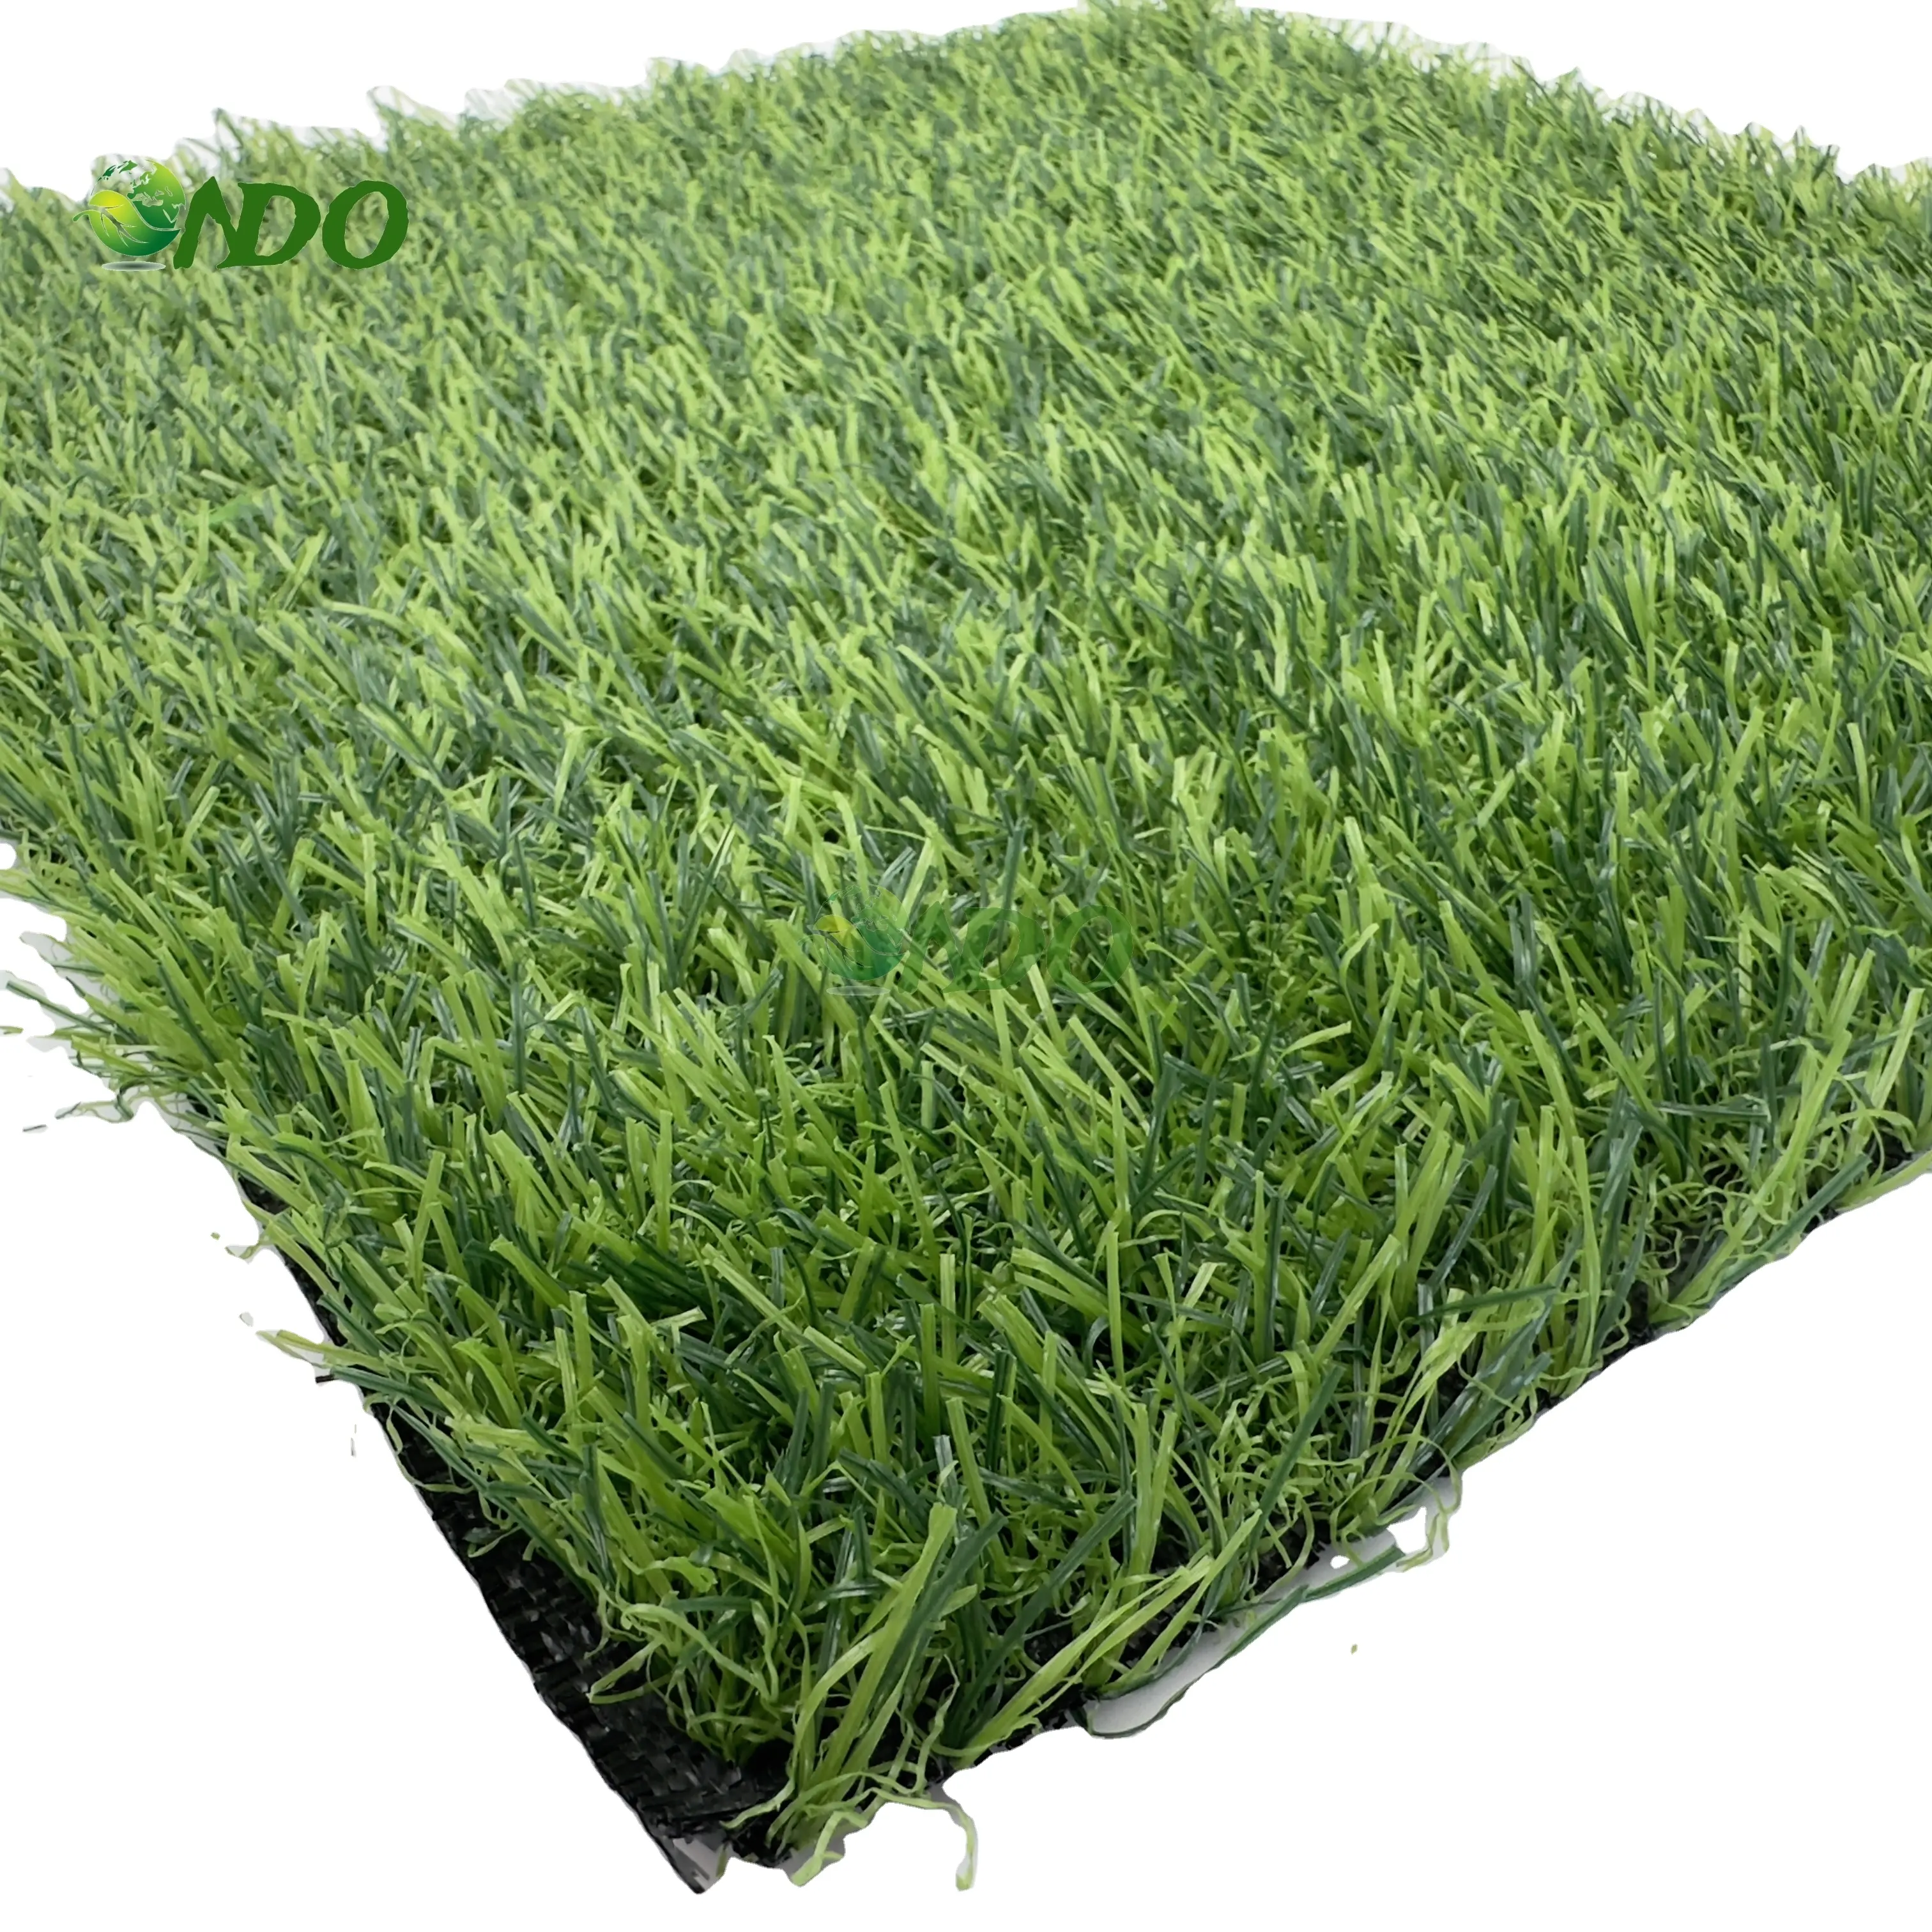 Erba artificiale ecologica originale per giardino giardino all'aperto erba di grano per giardino interno erba artificiale